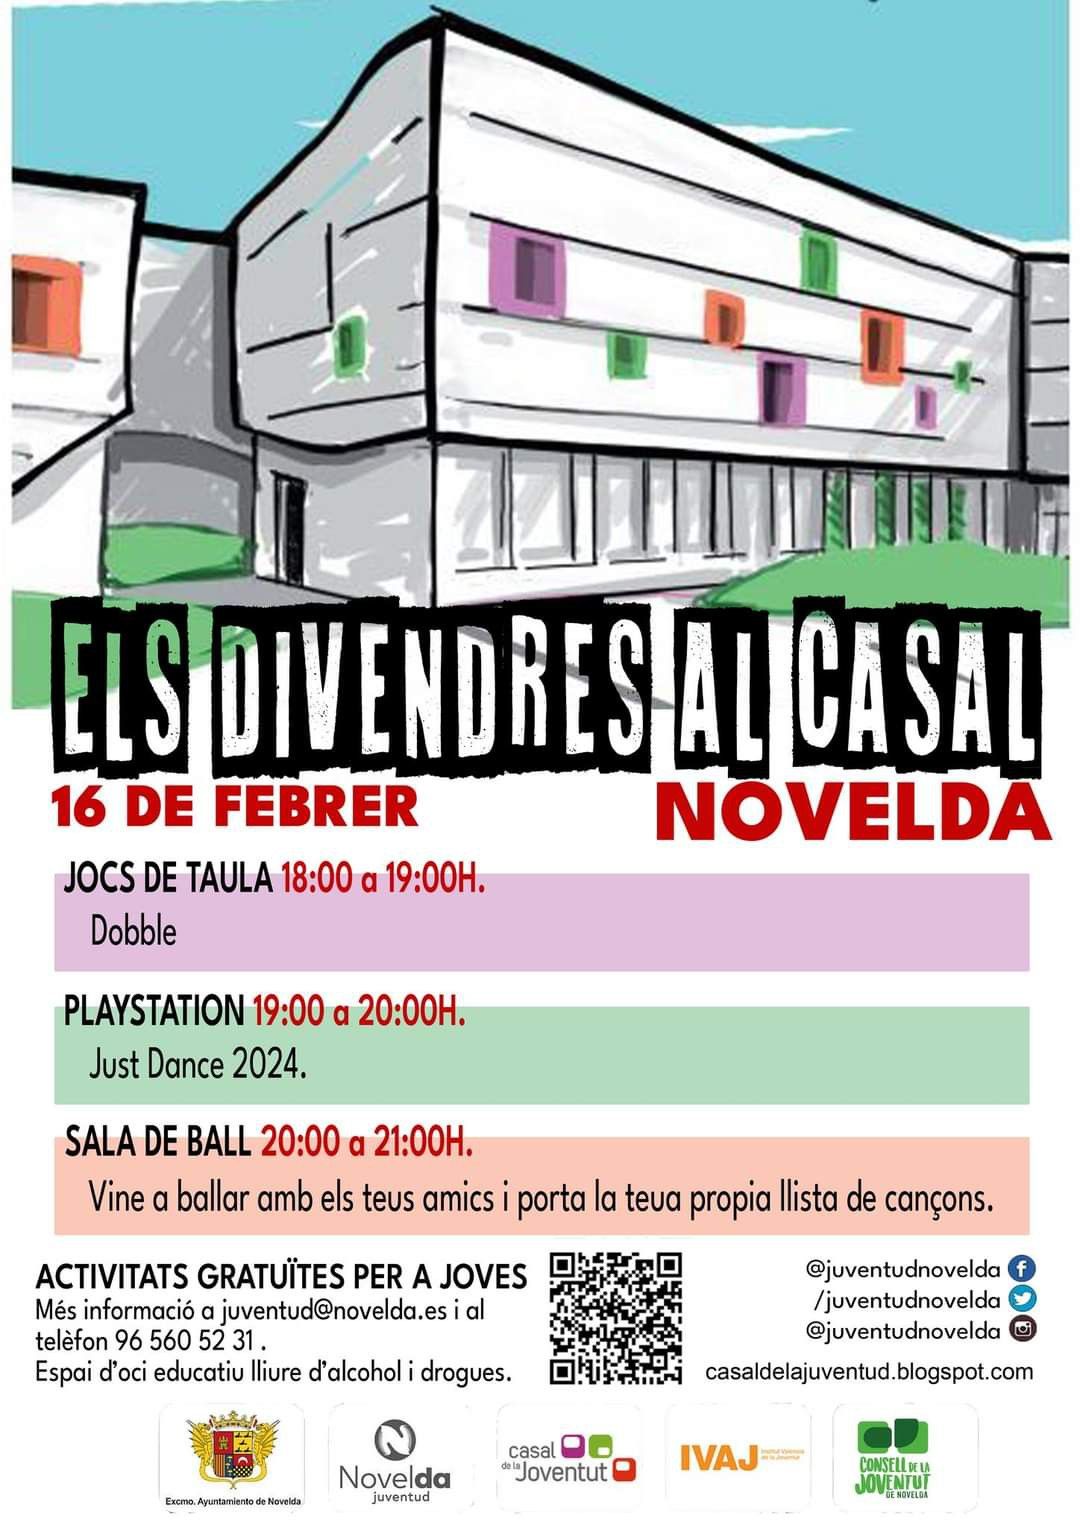 Ayuntamiento de Novelda divendres-casal Viernes al Casal 